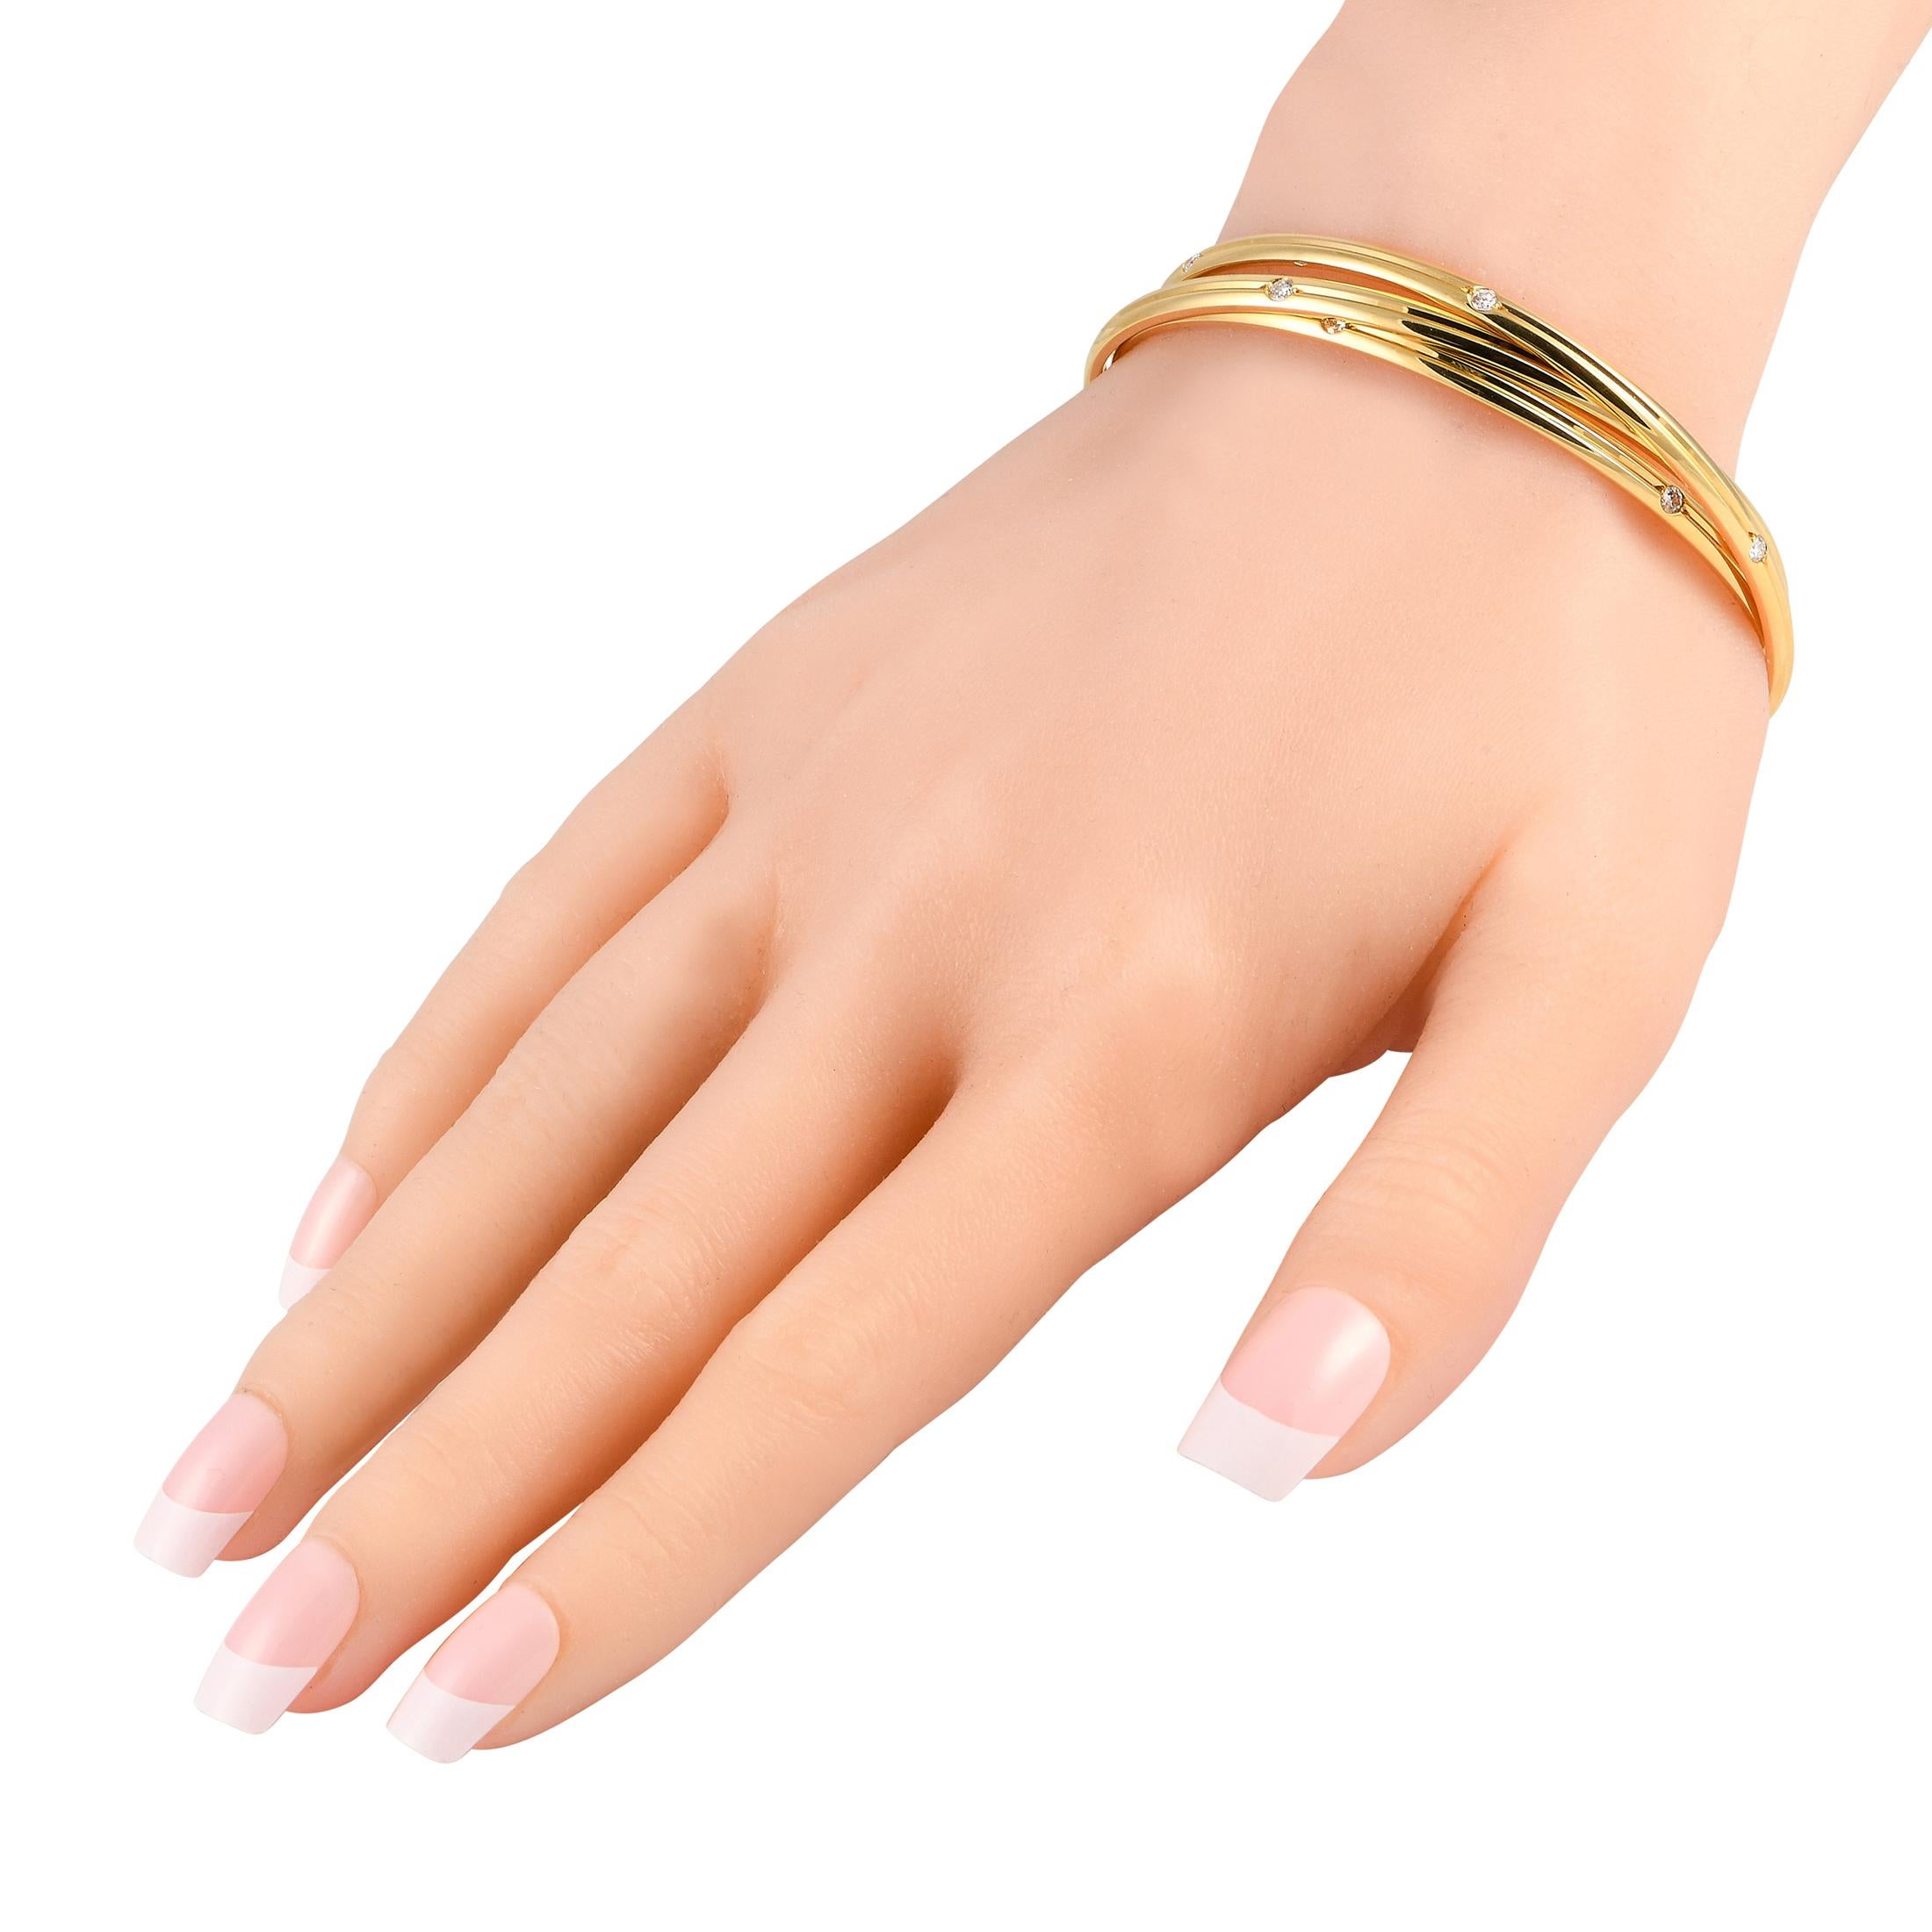 Un trio de bracelets en or jaune 18 carats est délicatement entrelacé sur cet exquis bracelet Constellation de Cartier. Intemporel et incroyablement chic, ce bijou mesure 7,85 cm de long et est serti de diamants d'un poids total de 1,0 carat.Ce